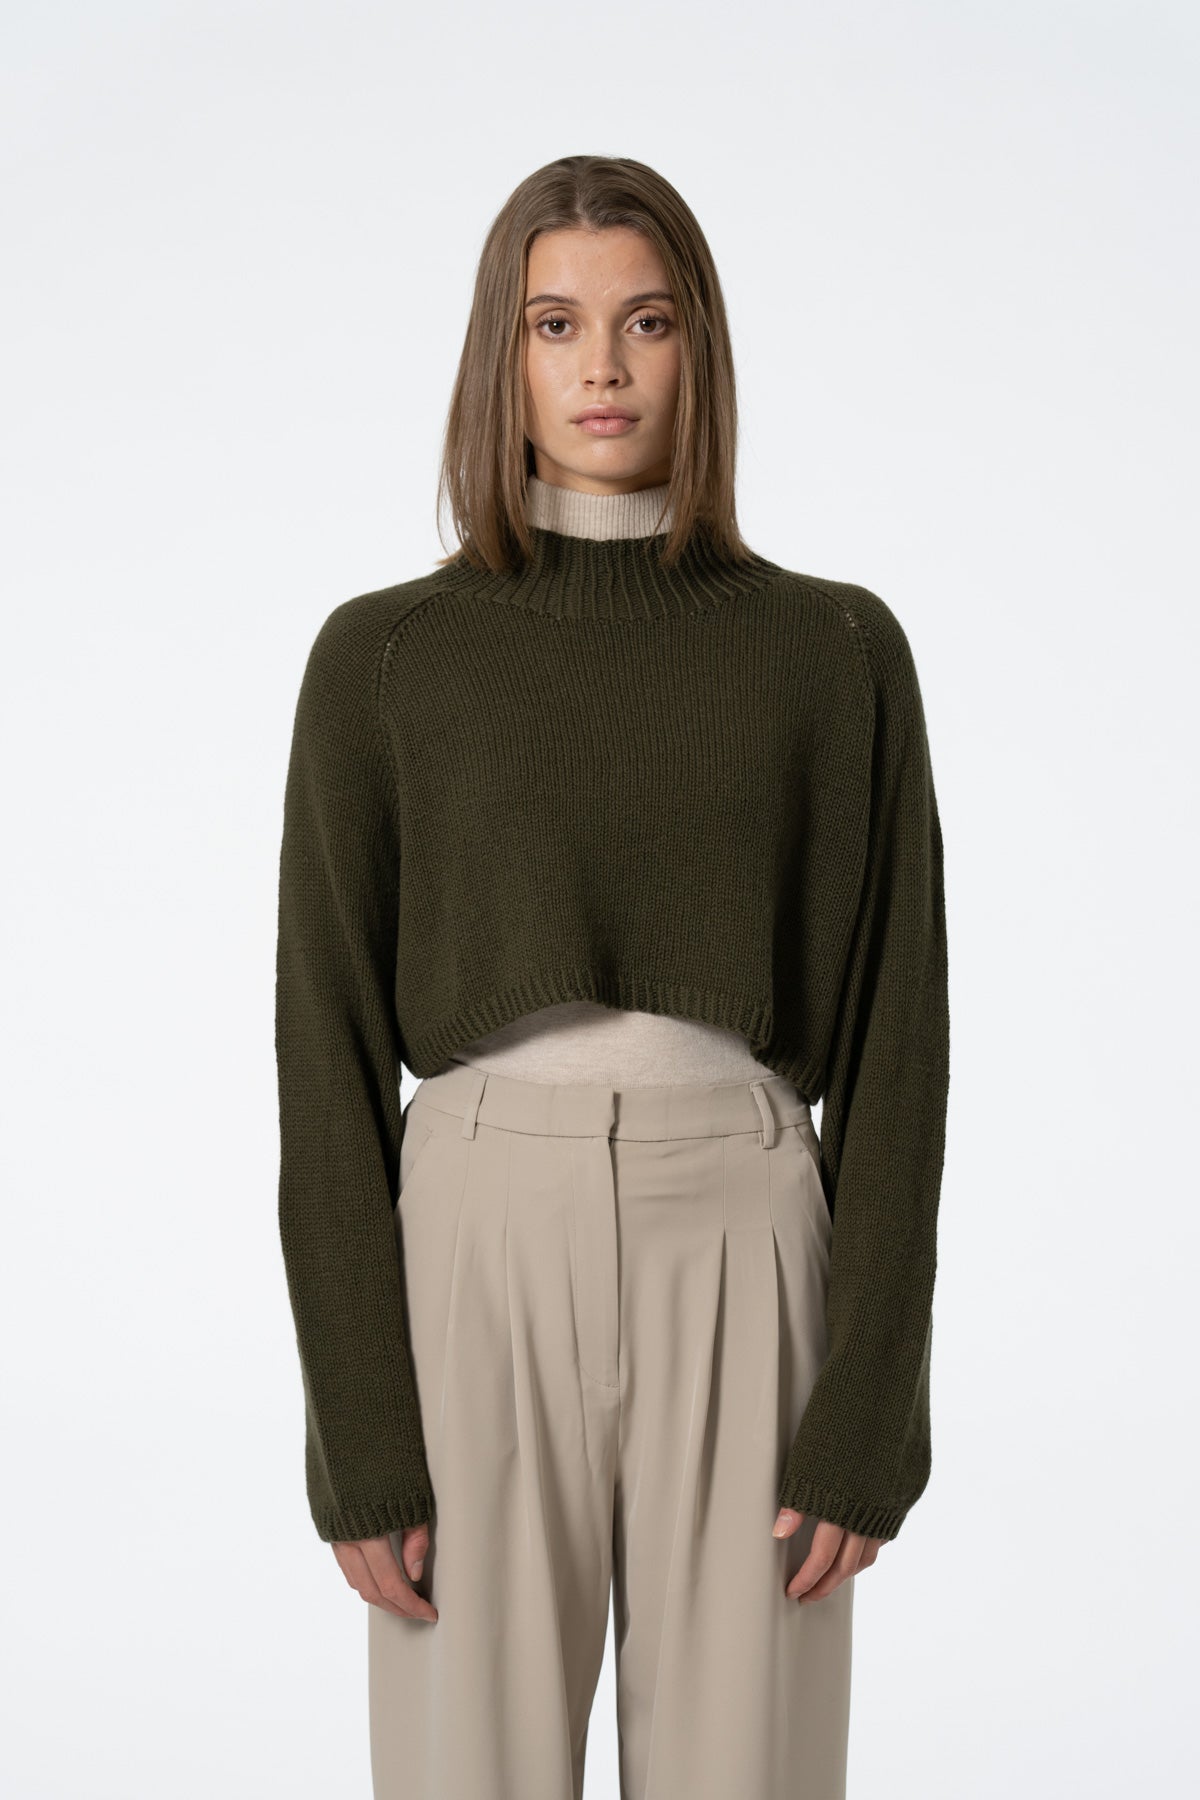 Dinadi Merino Cropped Sweater in Olive Green Fall 23/24